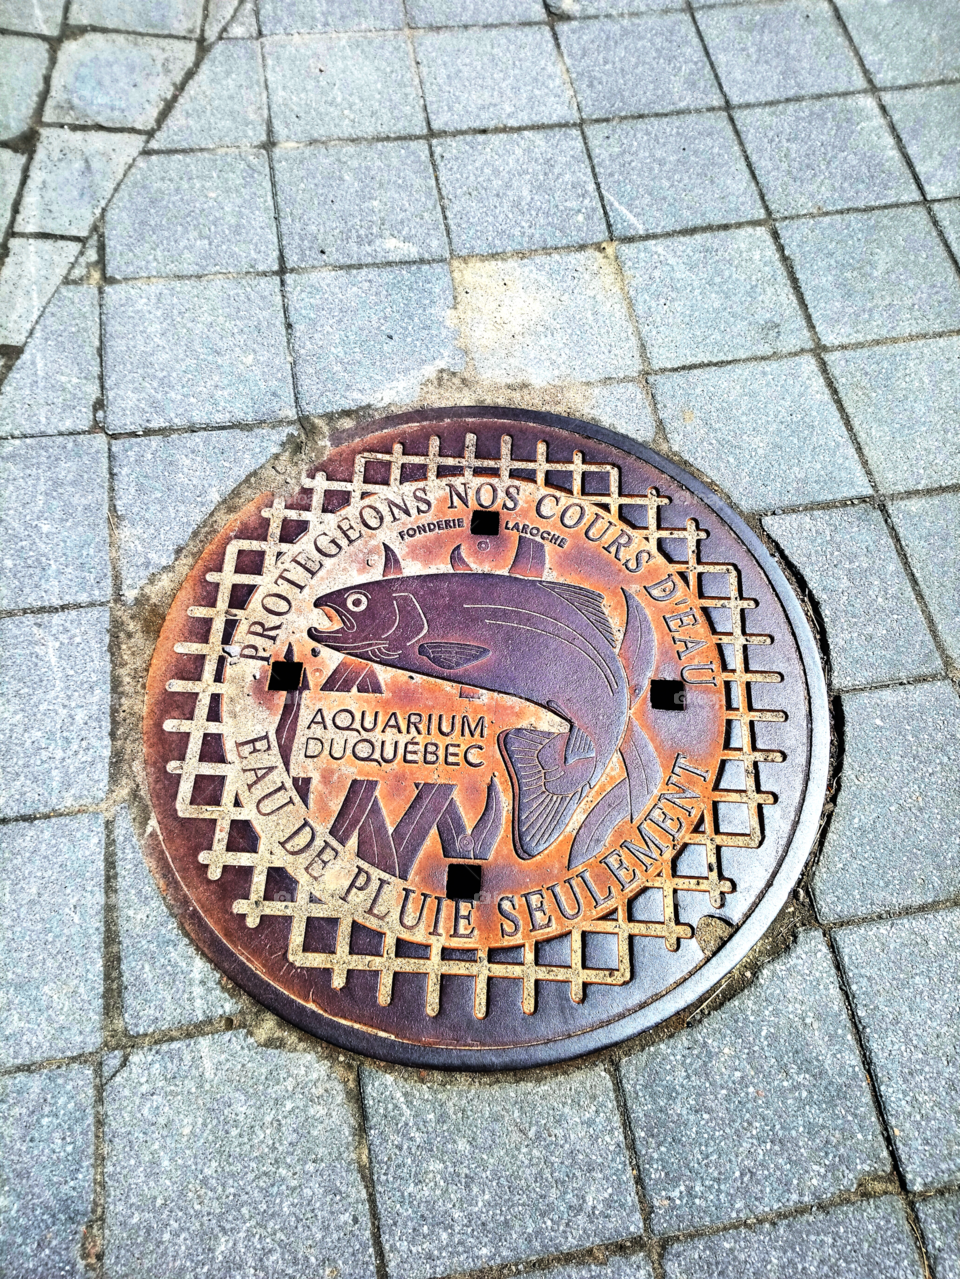 Quebec city's aquarium sewer plate